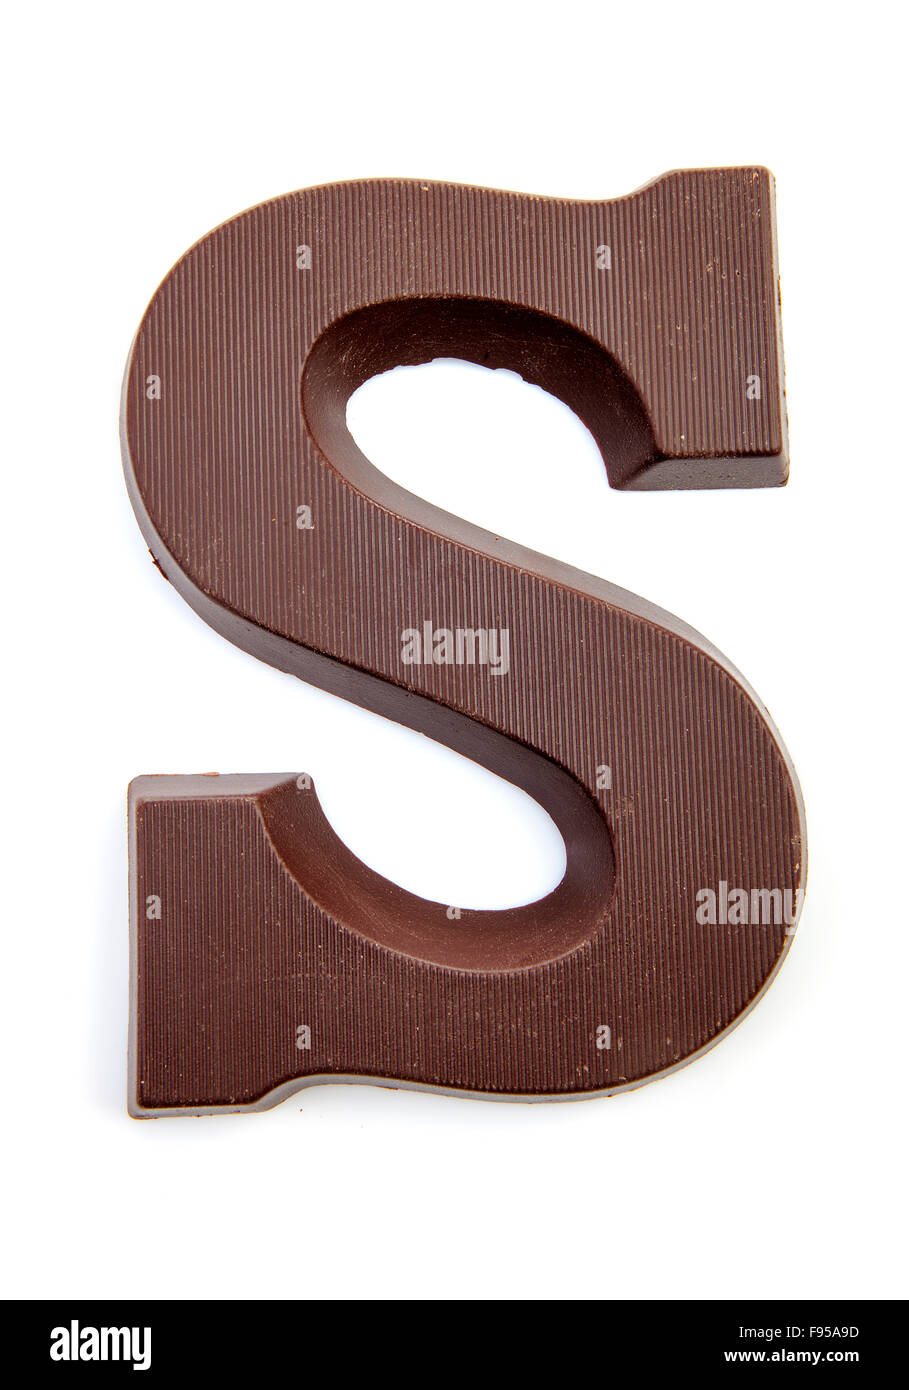 Schokolade Buchstaben S für Sinterklaas, Veranstaltung in der  niederländischen im Dezember auf weißem Hintergrund Stockfotografie - Alamy